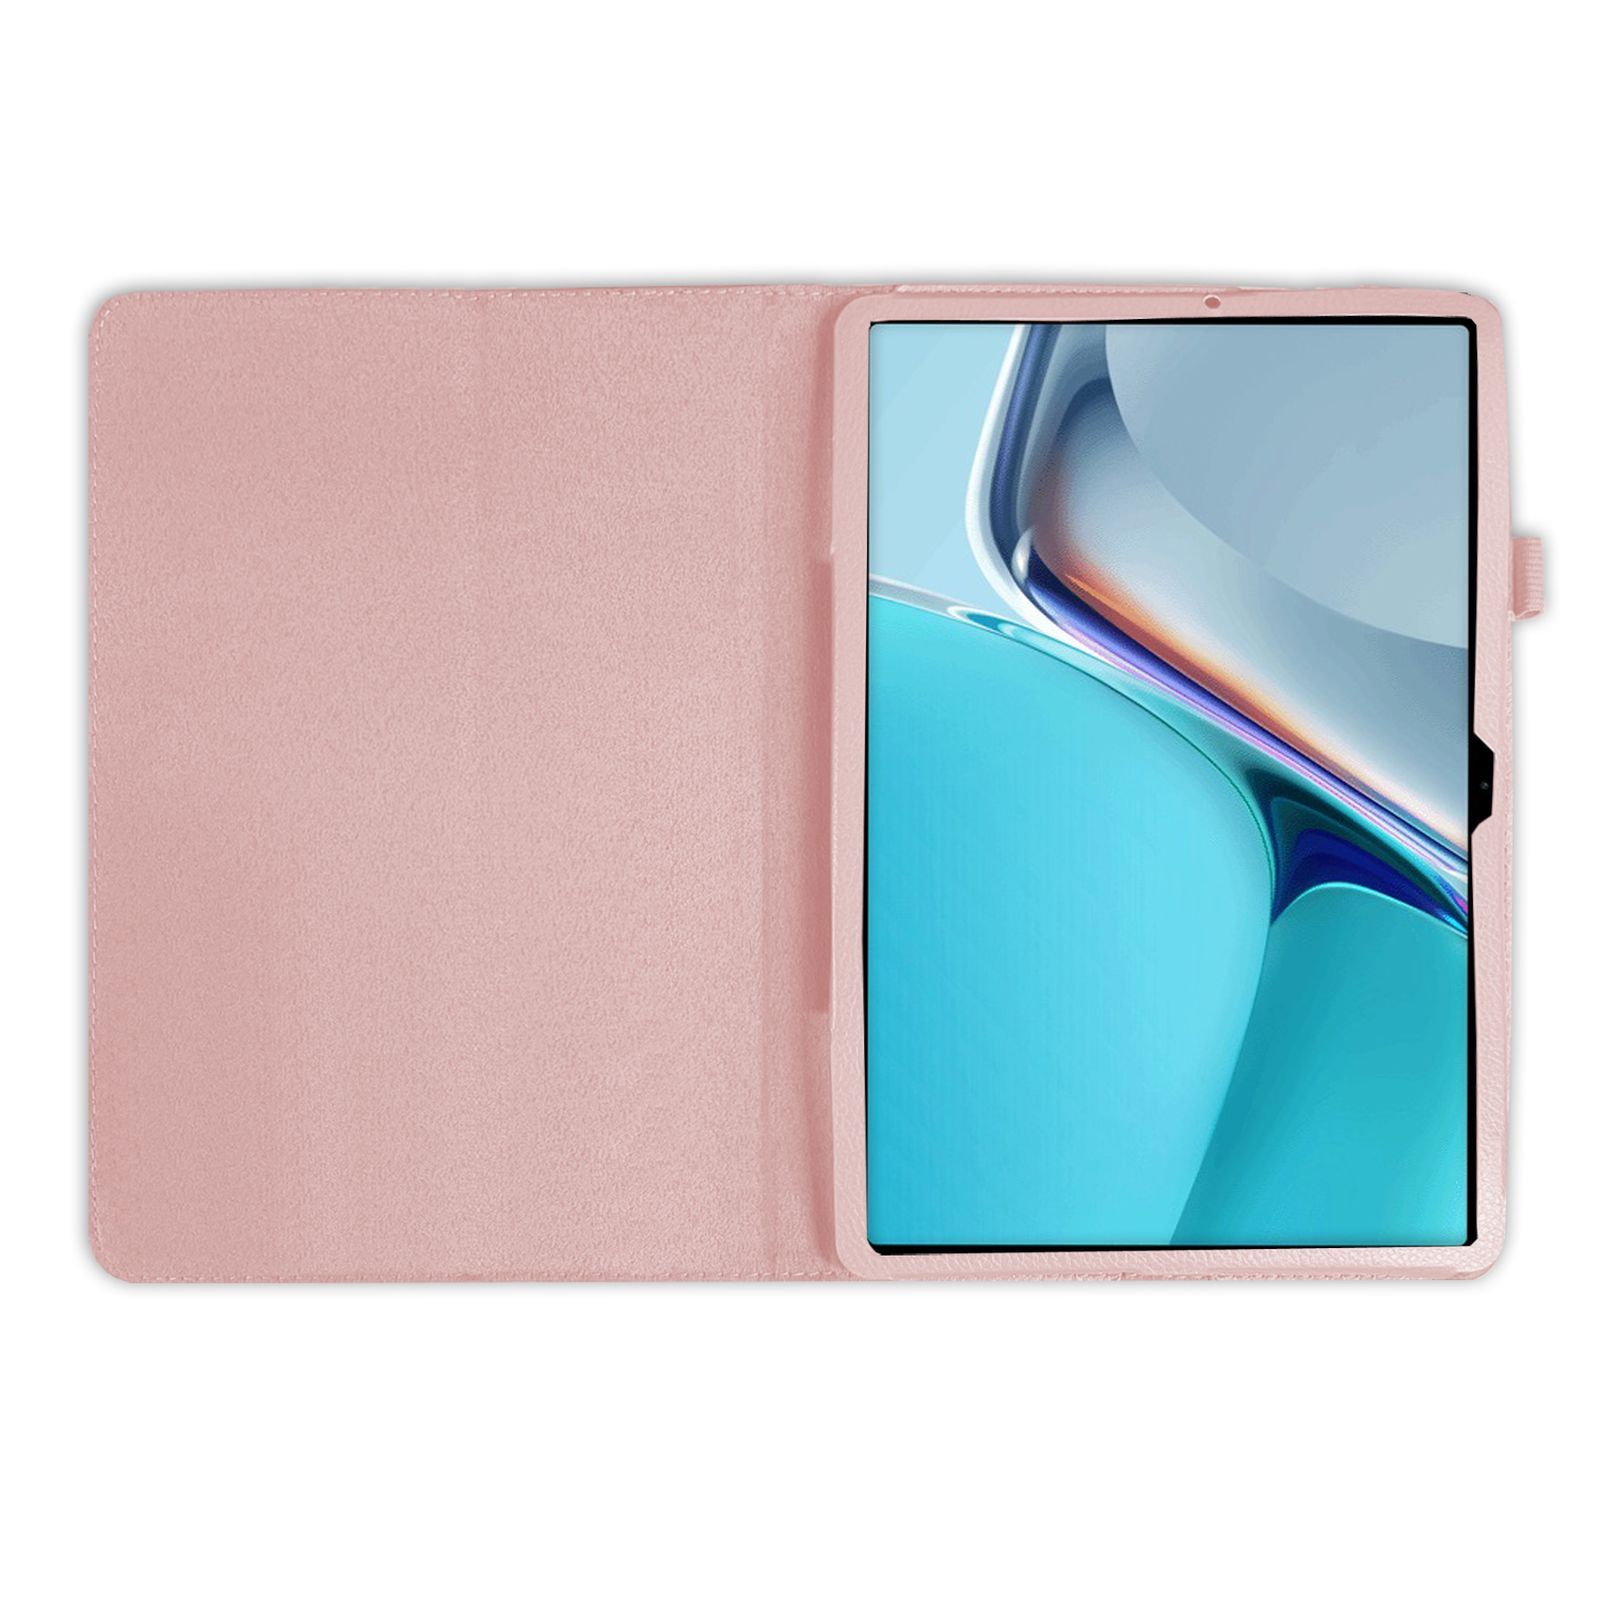 Case für LOBWERK 11 Bookcover Zoll Huawei MatePad 11 (Schutzhülle + 2in1 Schutzglas) 2021 Rosa Set Kunstleder,